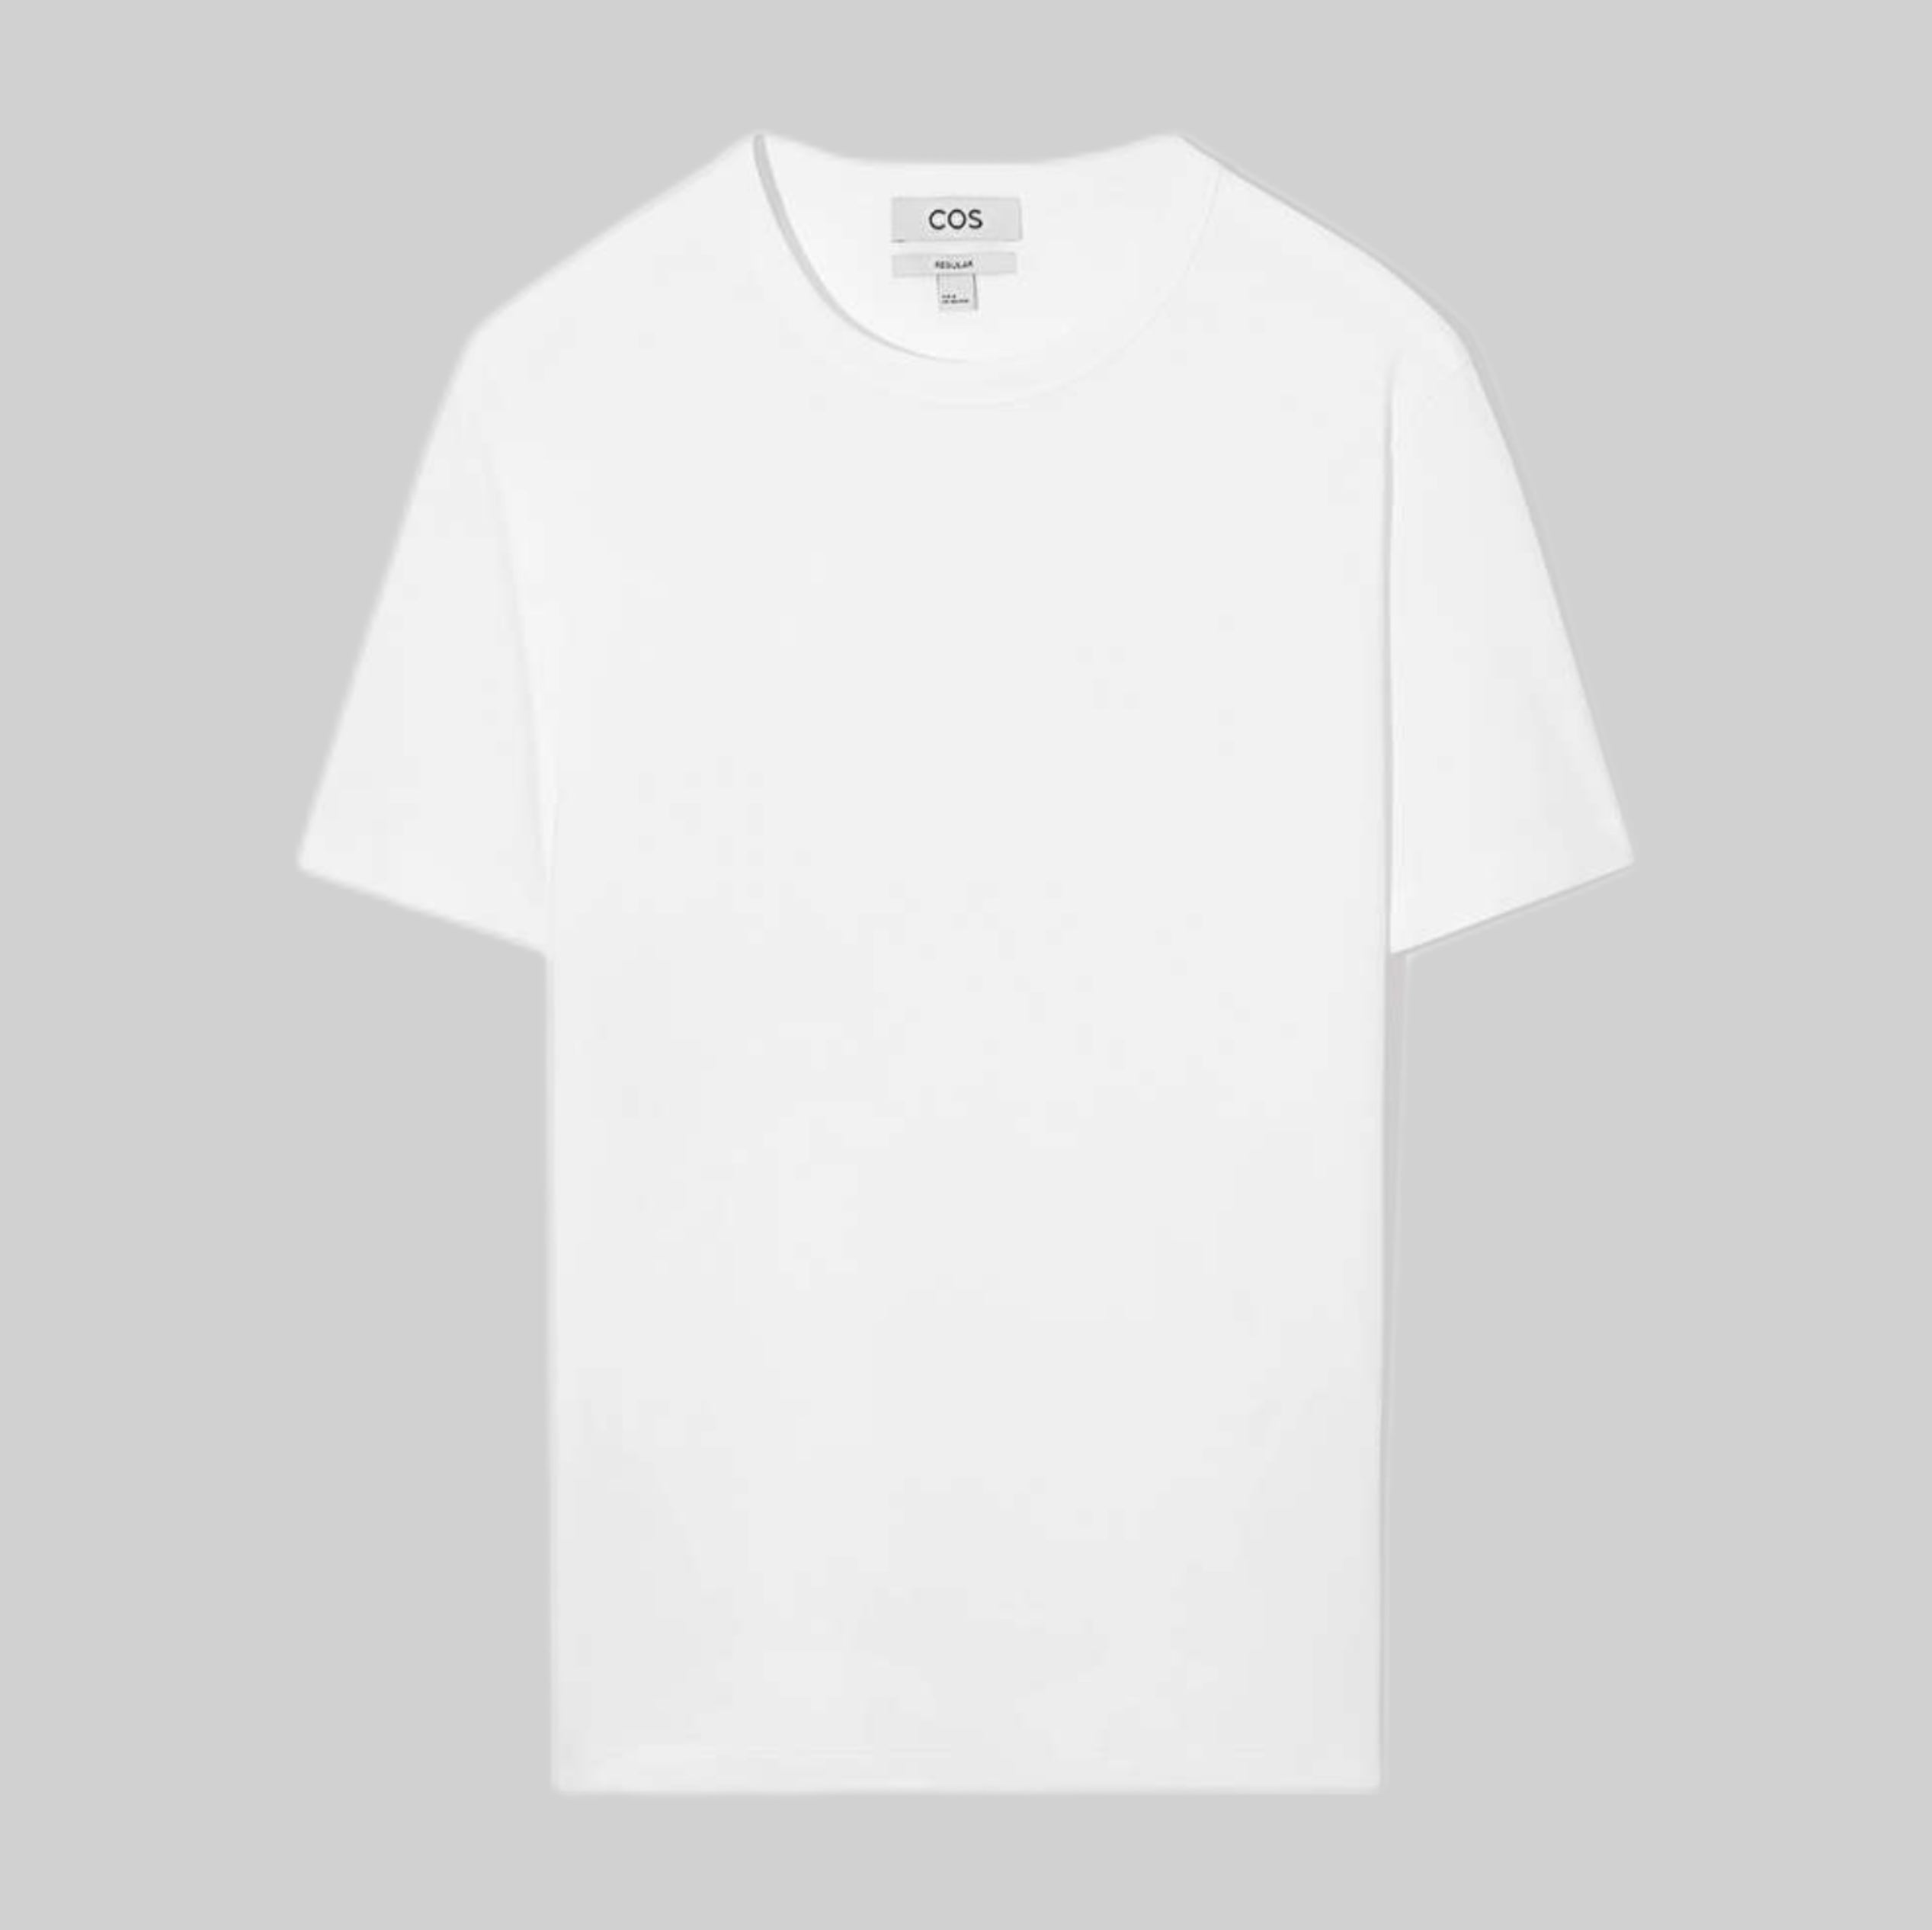 Cos t-shirt, men, white, frontside